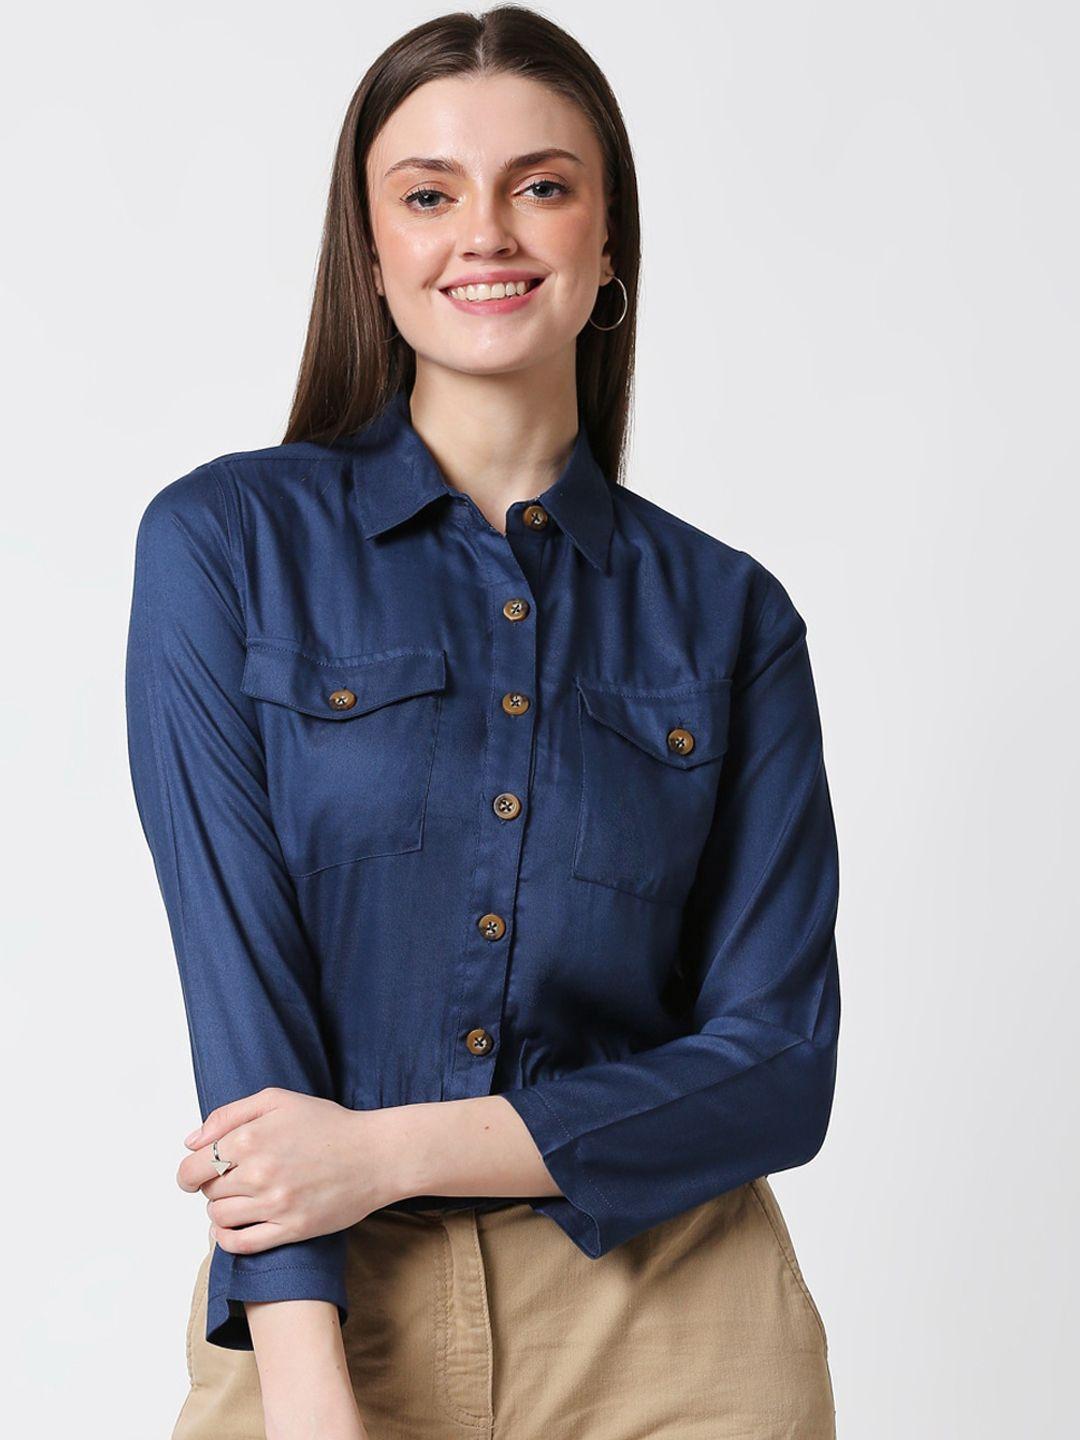 bewakoof-women-blue-opaque-casual-shirt